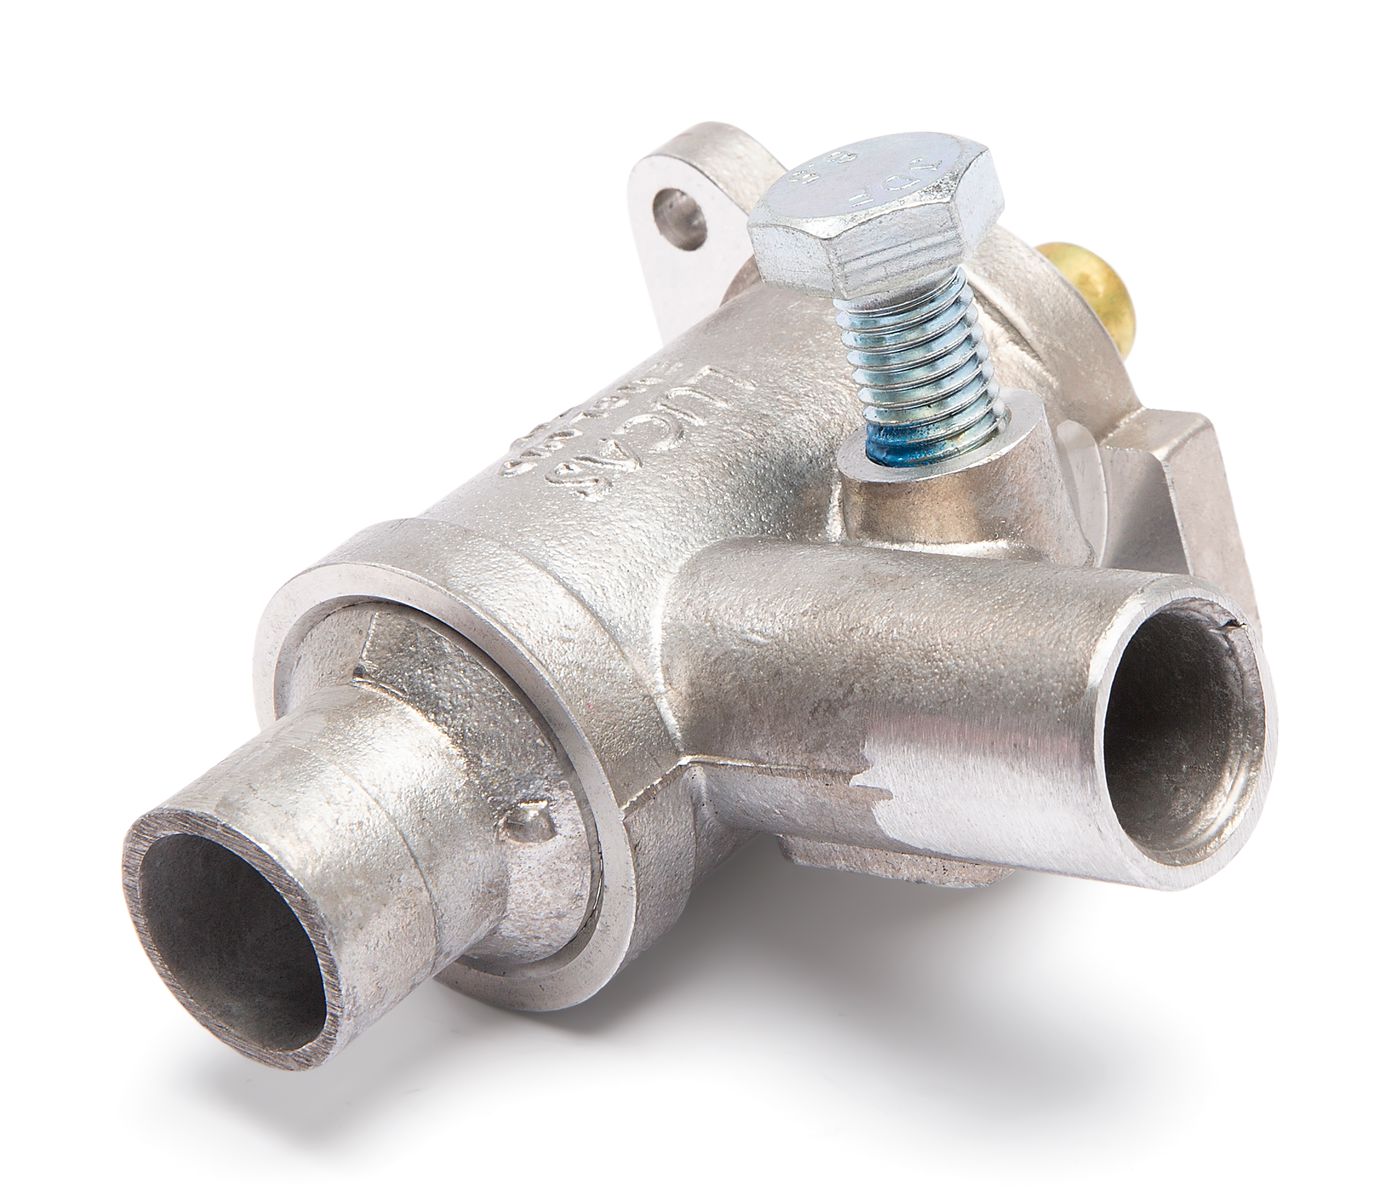 Zusatzluftventil
Auxiliary air valve
Soupape d'aération supplé